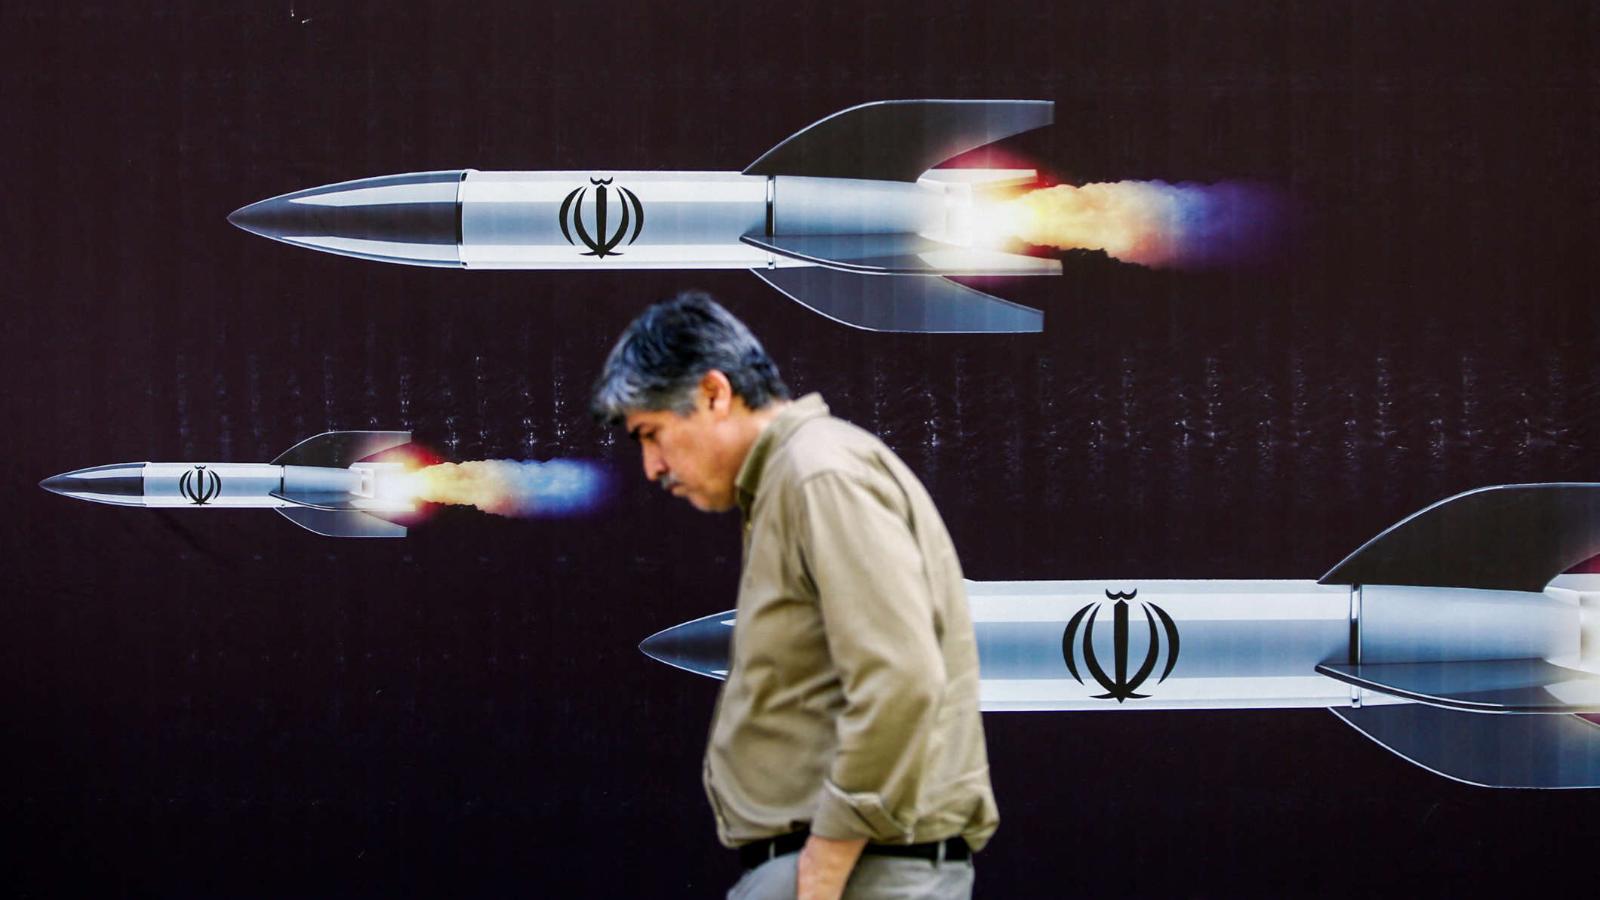 Es poco probable que Irán e Israel se ataquen directamente, quieren evitar escalar el conflicto, dice analista